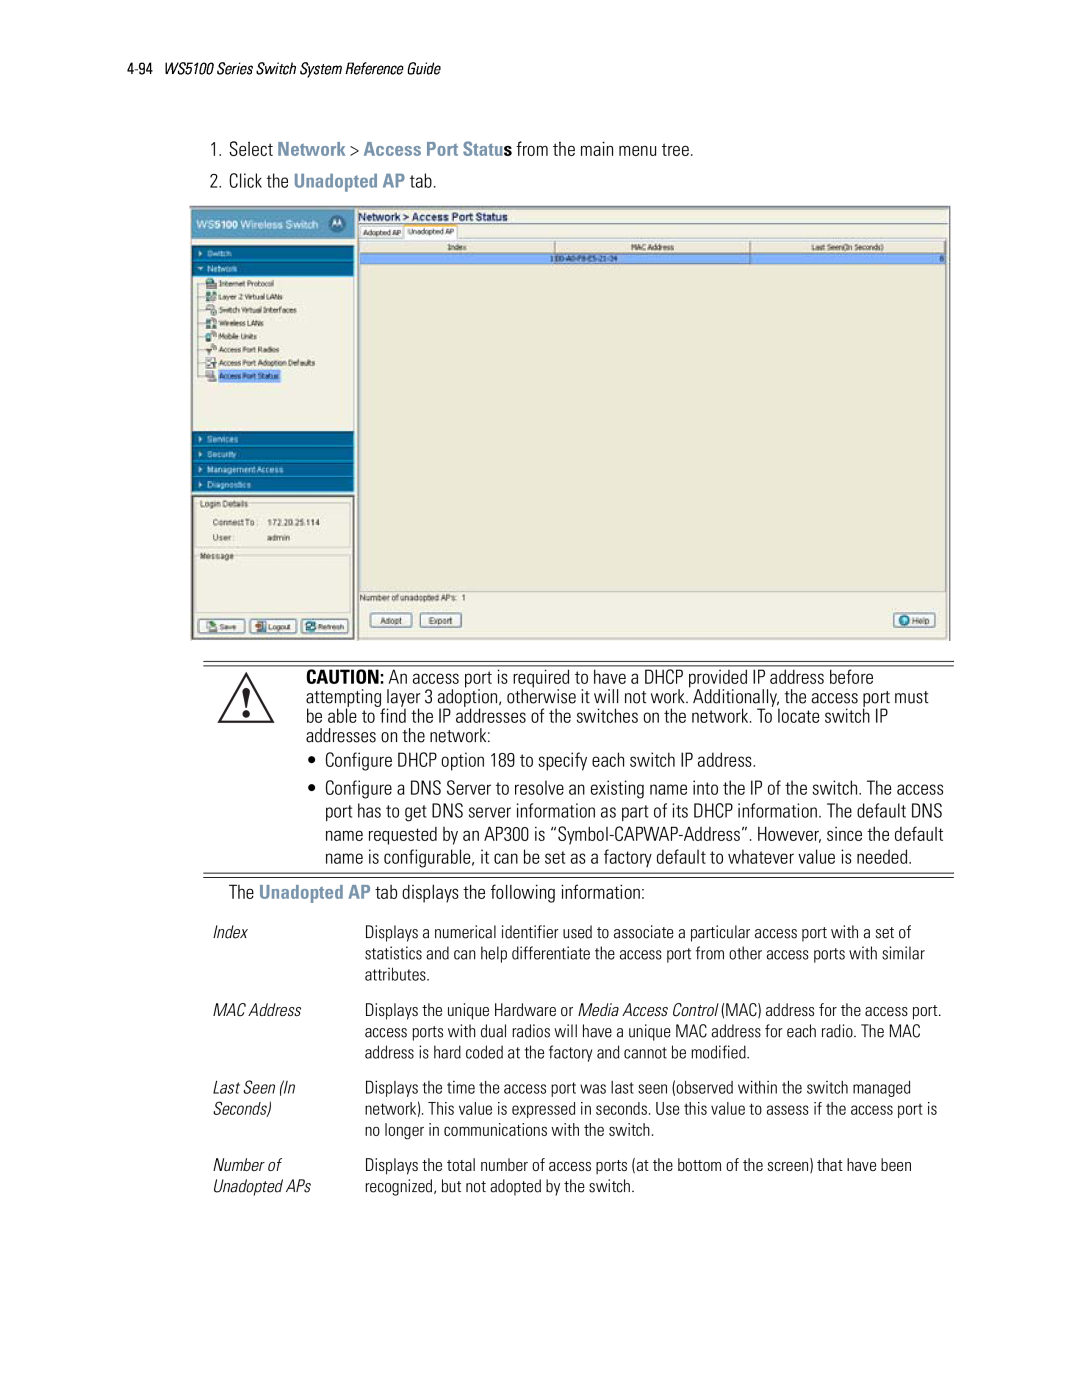 Motorola WS5100 manual Click the Unadopted AP tab 